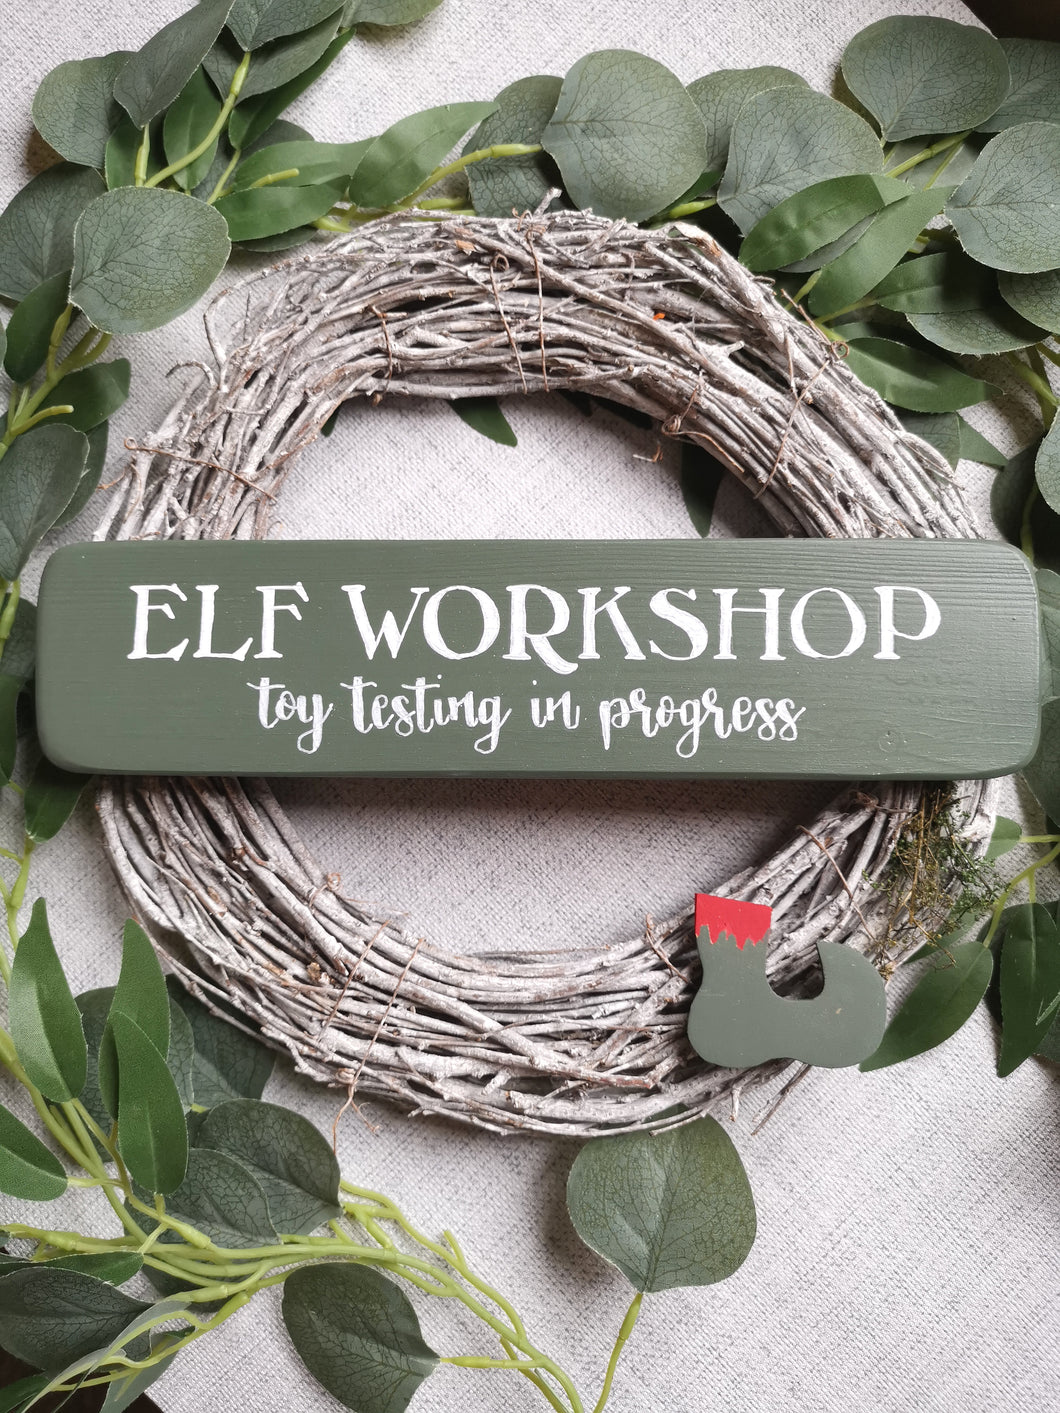 Elf Workshop wooden sign